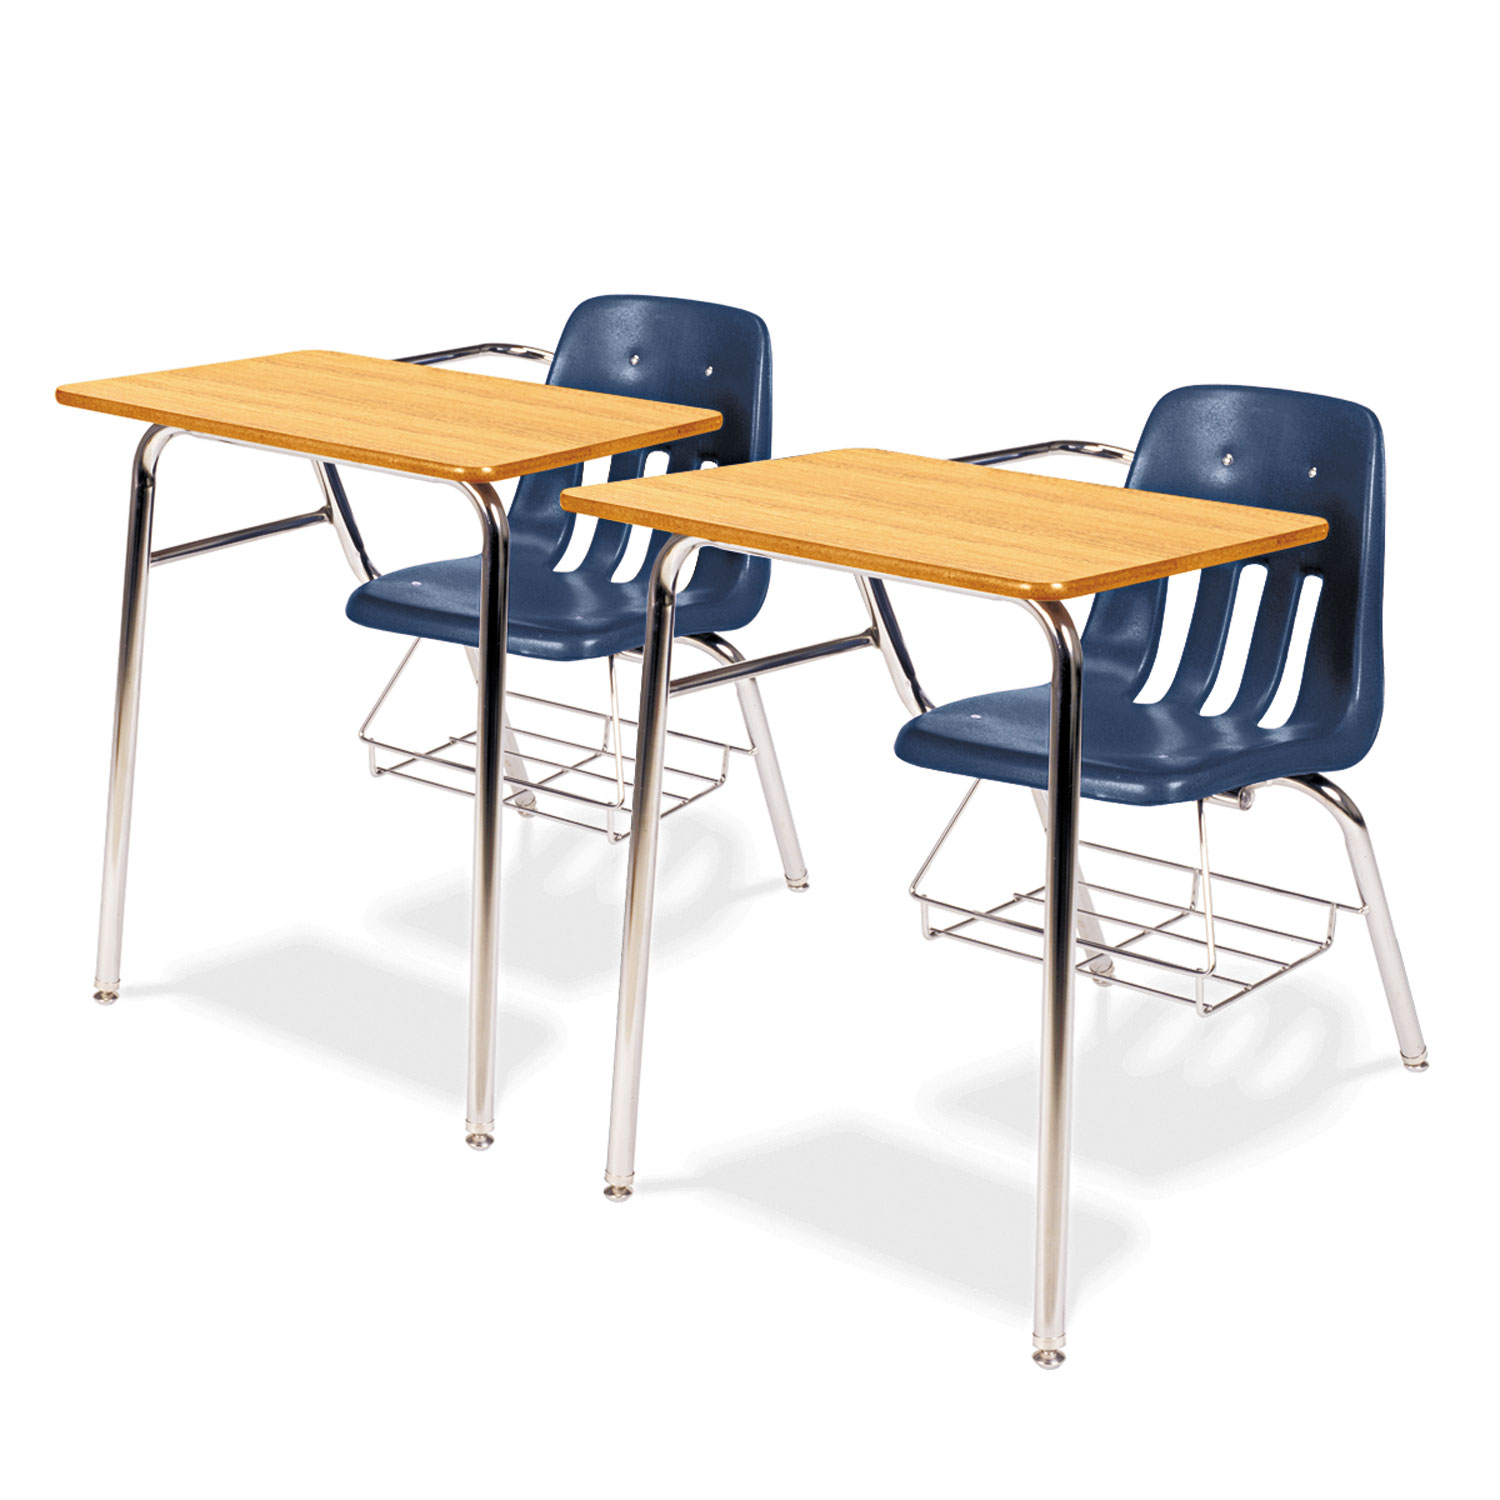 9400 Series Chair Desk, 21w x 33-1/2d x 30h, Medium Oak/Navy, 2/Carton